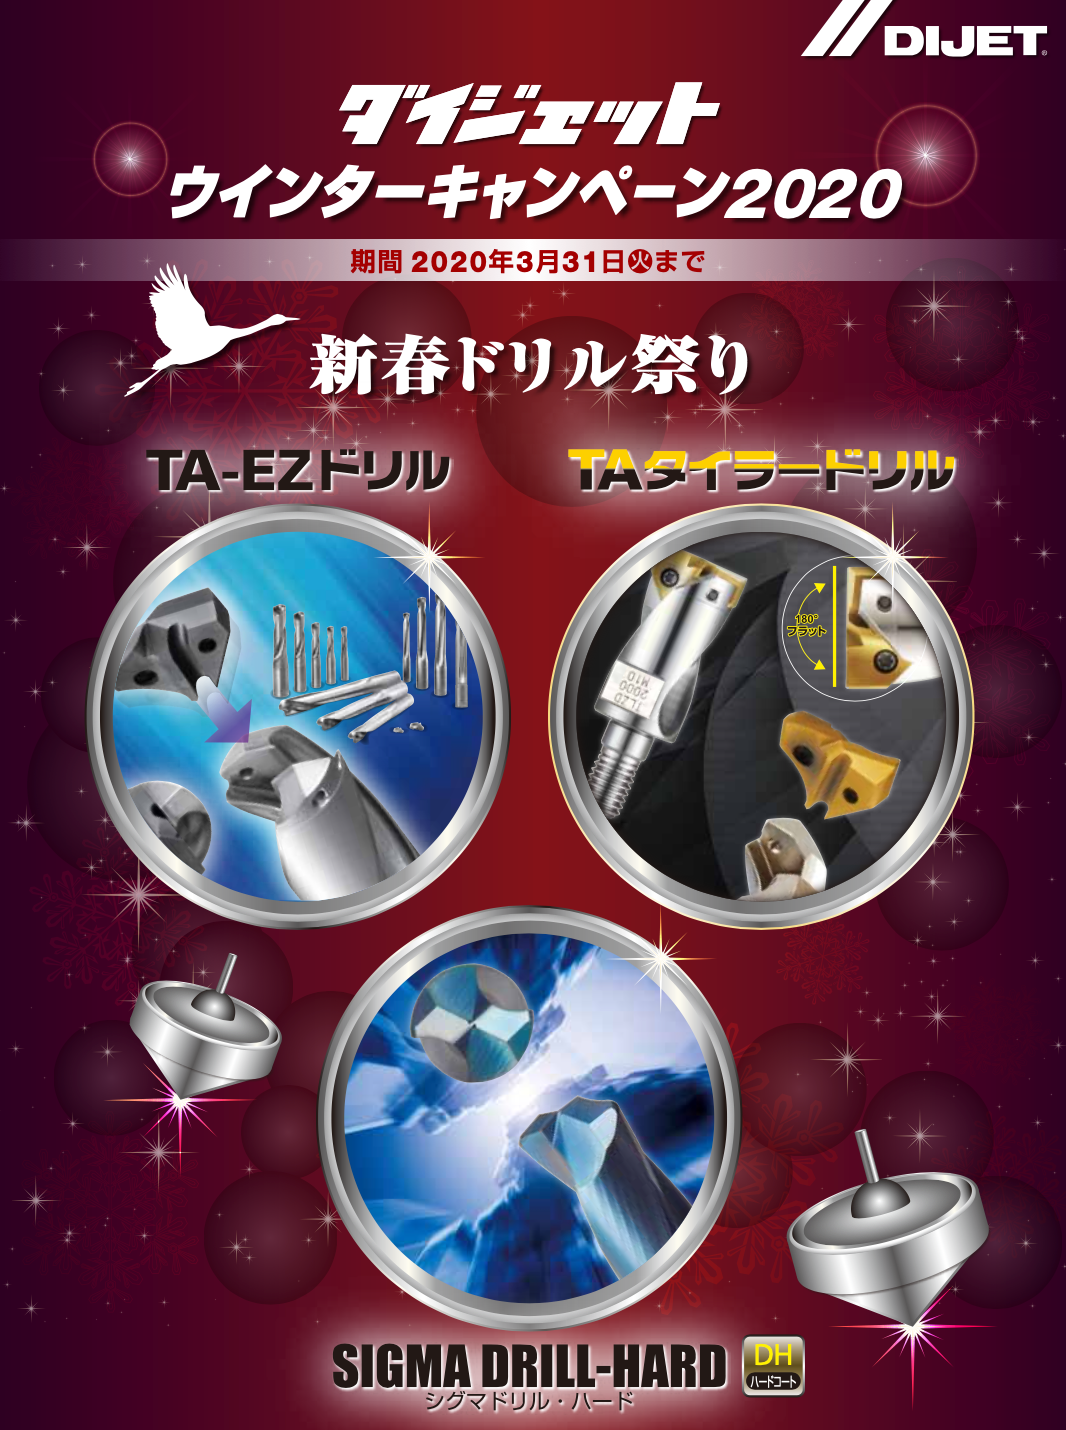 シャンク DIJET/ダイジェット工業 EZドリル(3Dタイプ) EZDM102 murauchi.co.jp - 通販 - PayPay